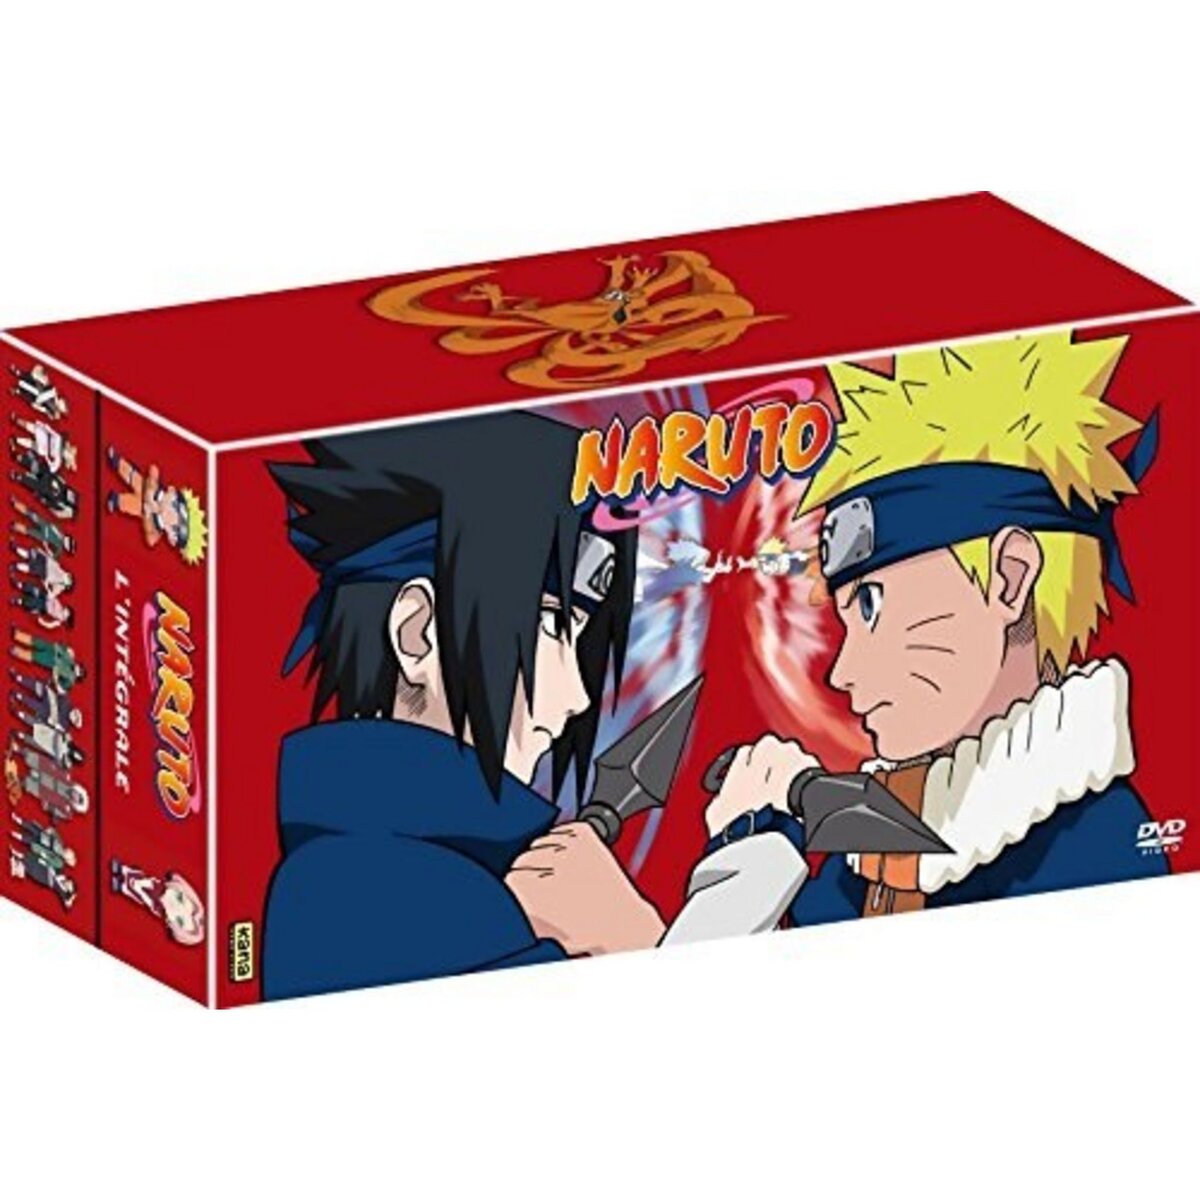 Coffret DVD intégrale Naruto 